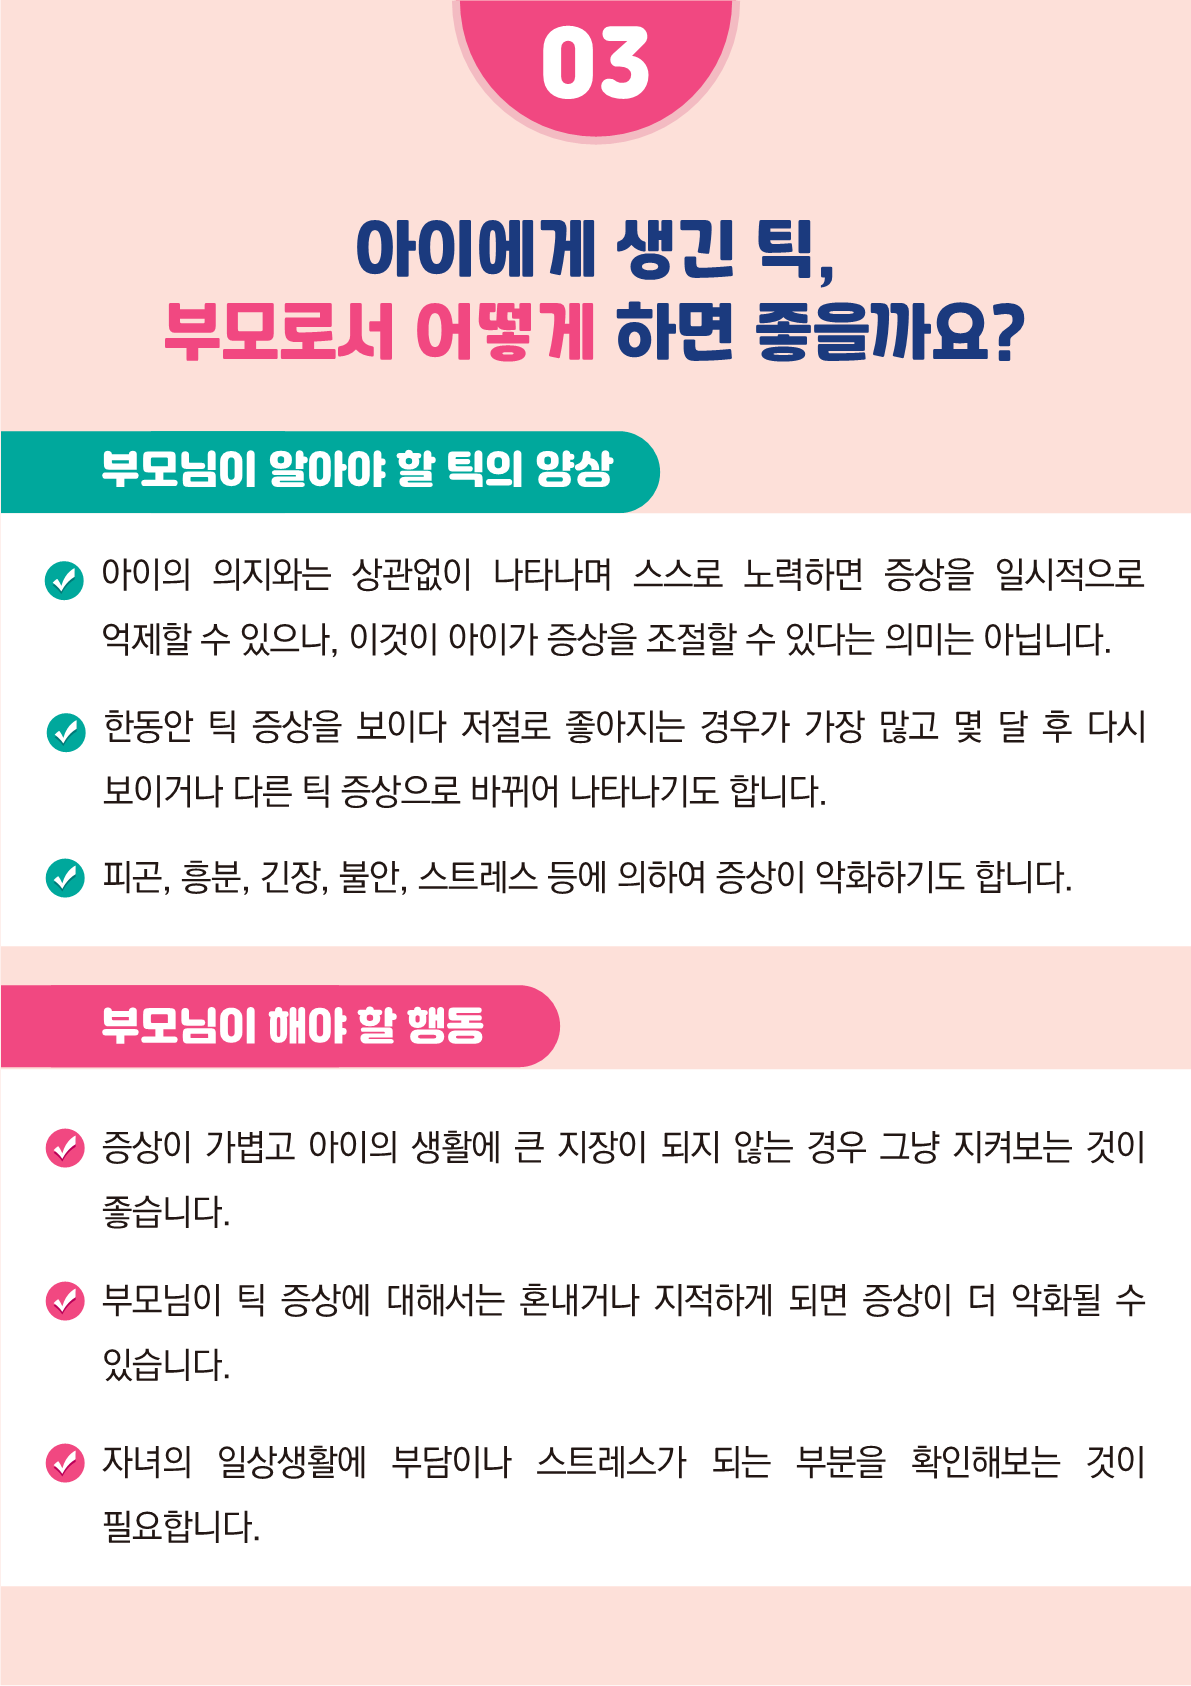 [붙임2]카드뉴스 제2021-5_틱장애(초등학부모용)_7.png